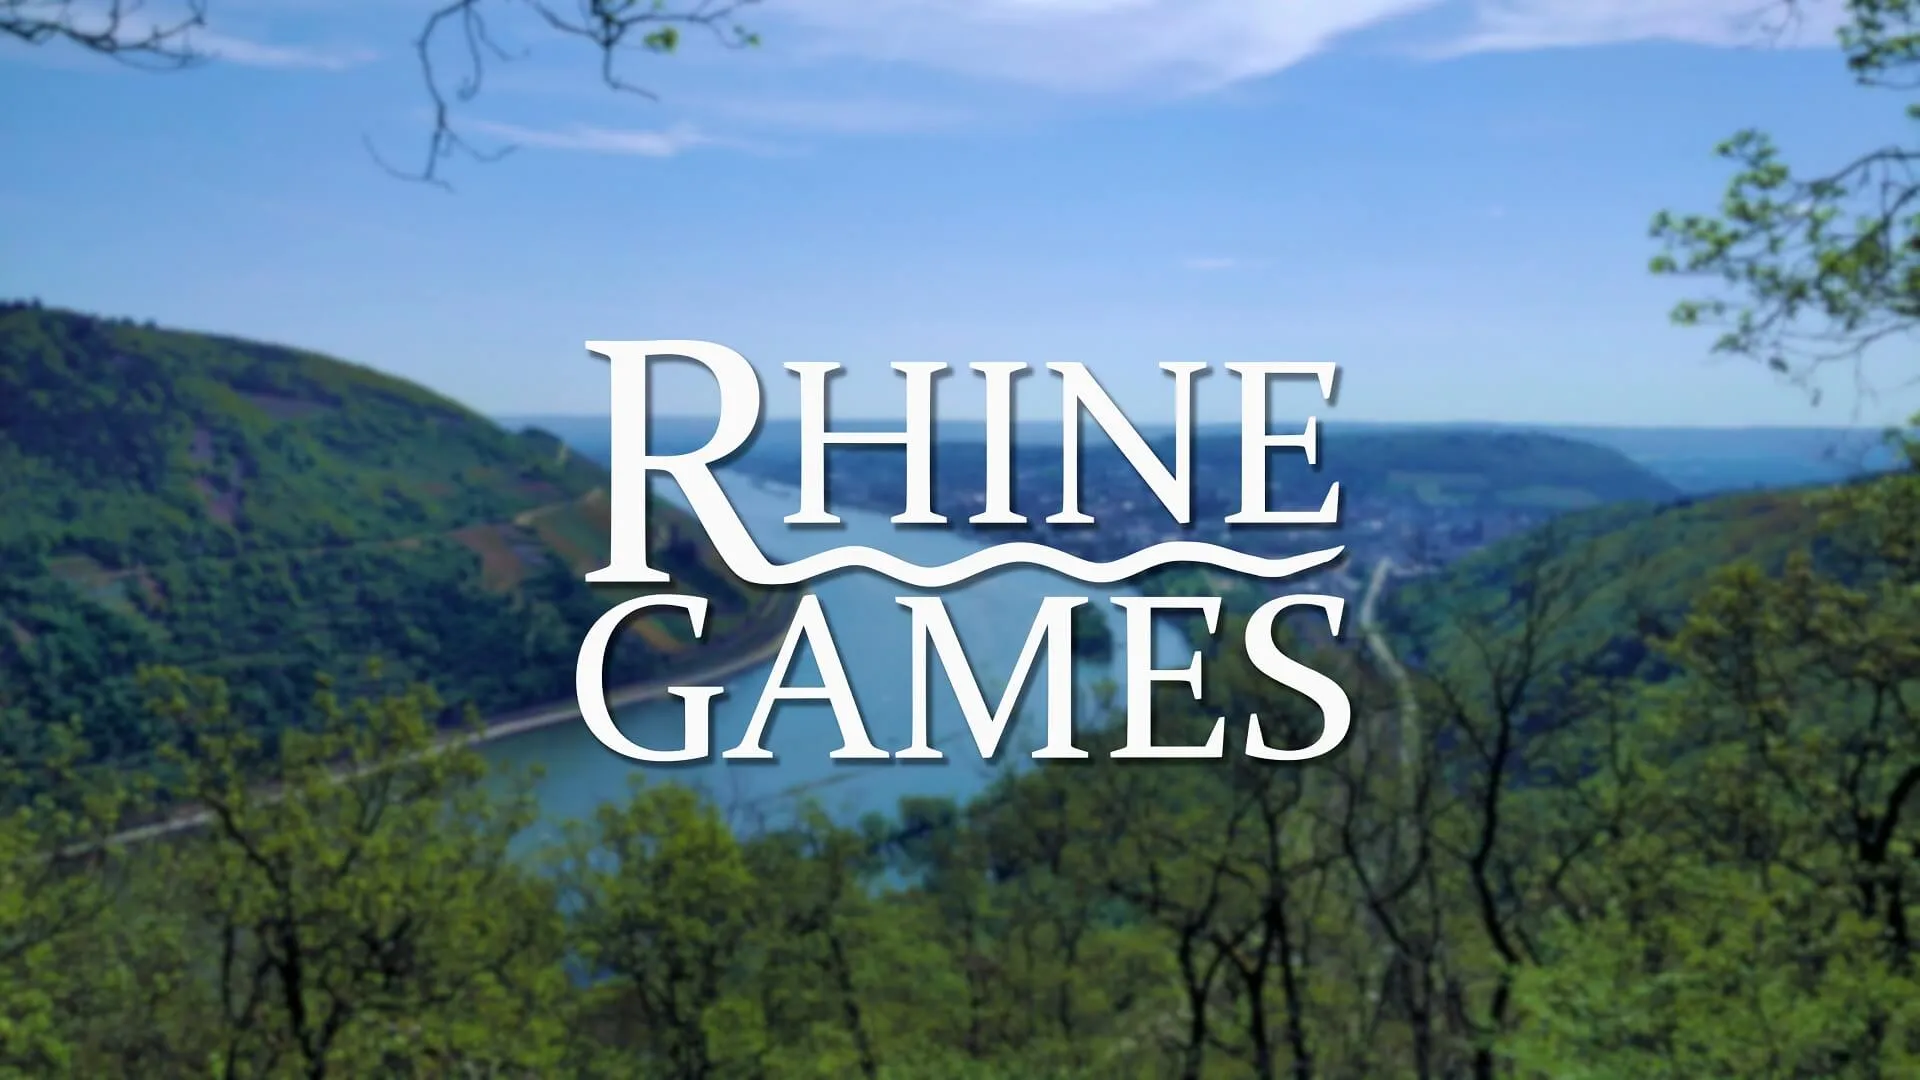 (c) Rhinegames.com